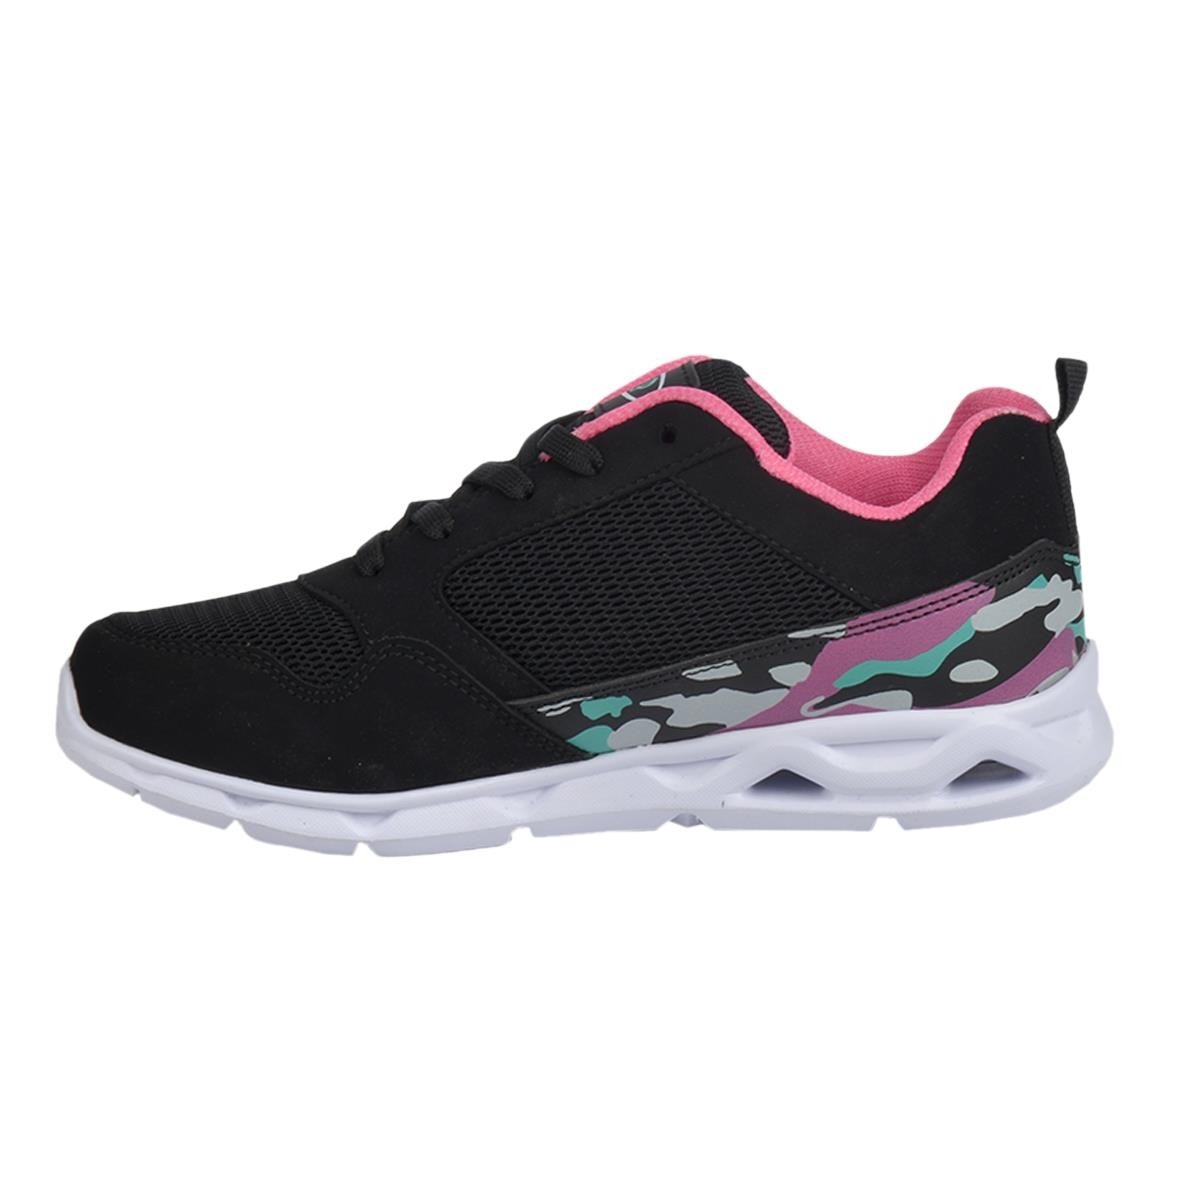 Flo 201-7405 Siyah Yazlık Yürüyüş Koşu Bayan Spor Ayakkabı. 2